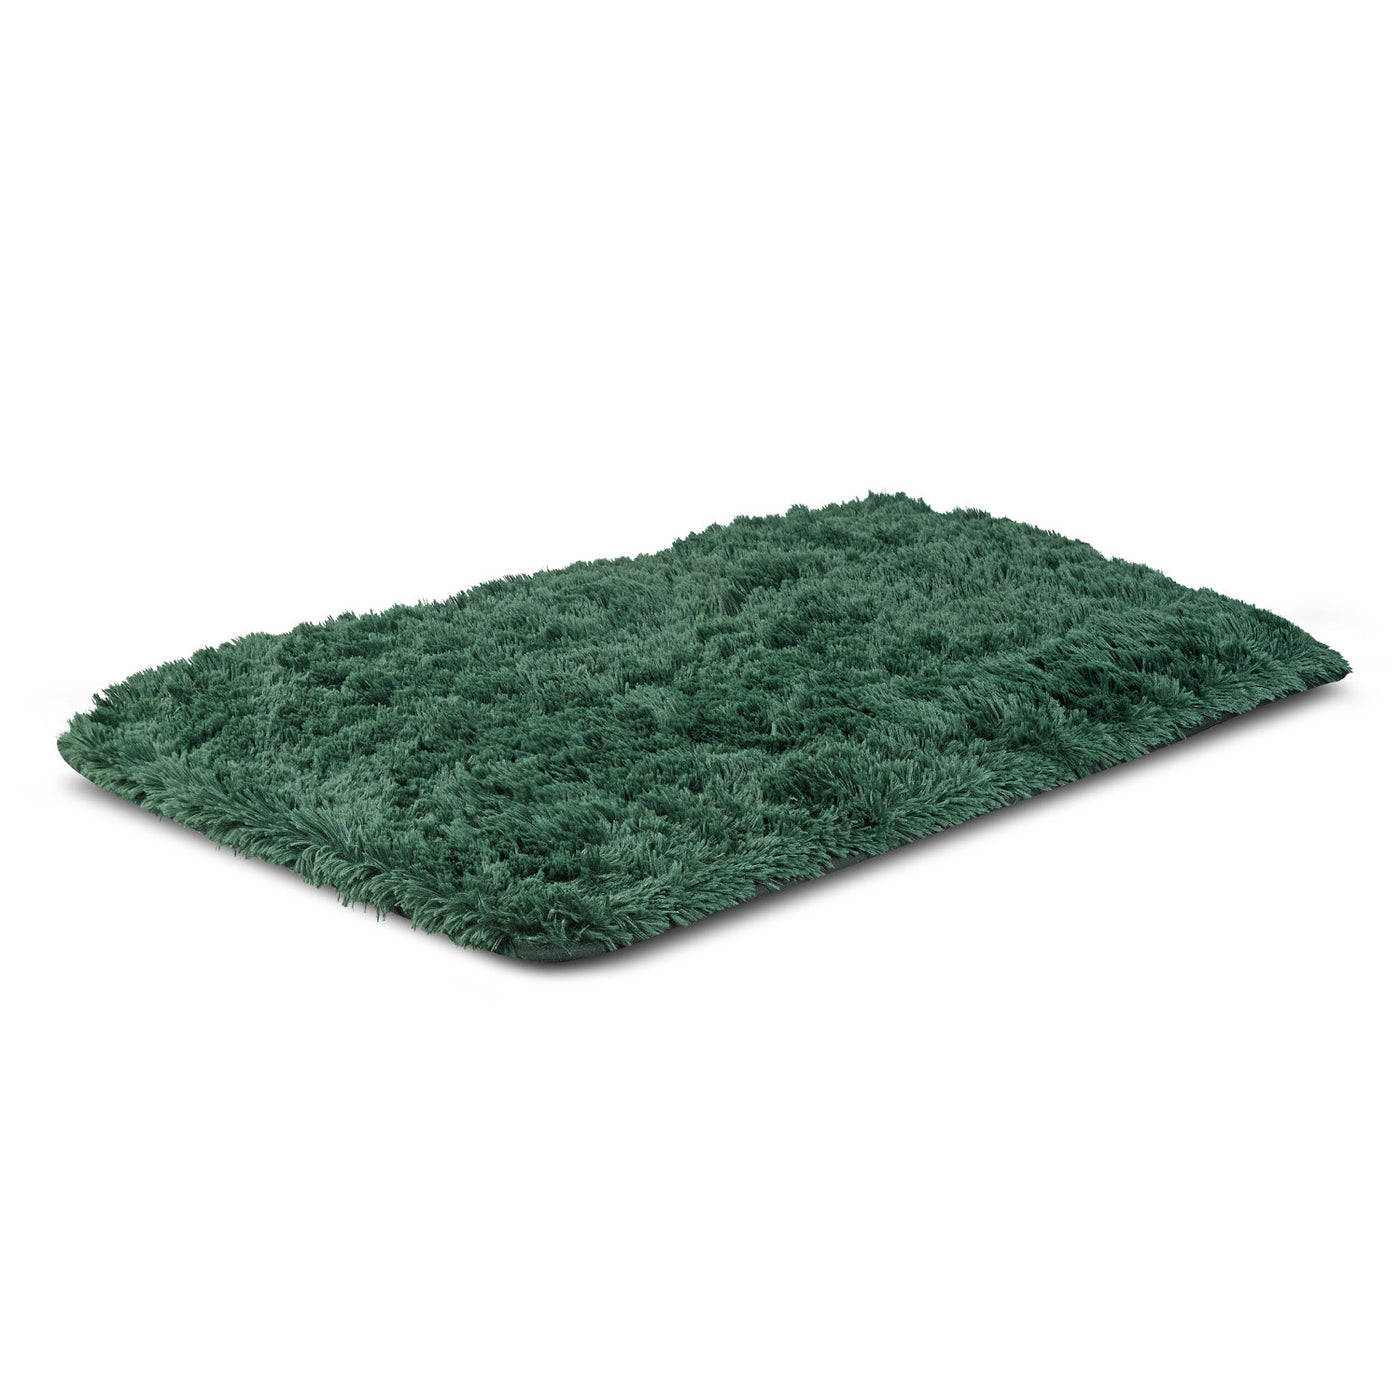 Dywan pluszowy, krótki włos, antypoślizgowy, 80 x 160 cm, zielony, DYWSHA80/160ZIE